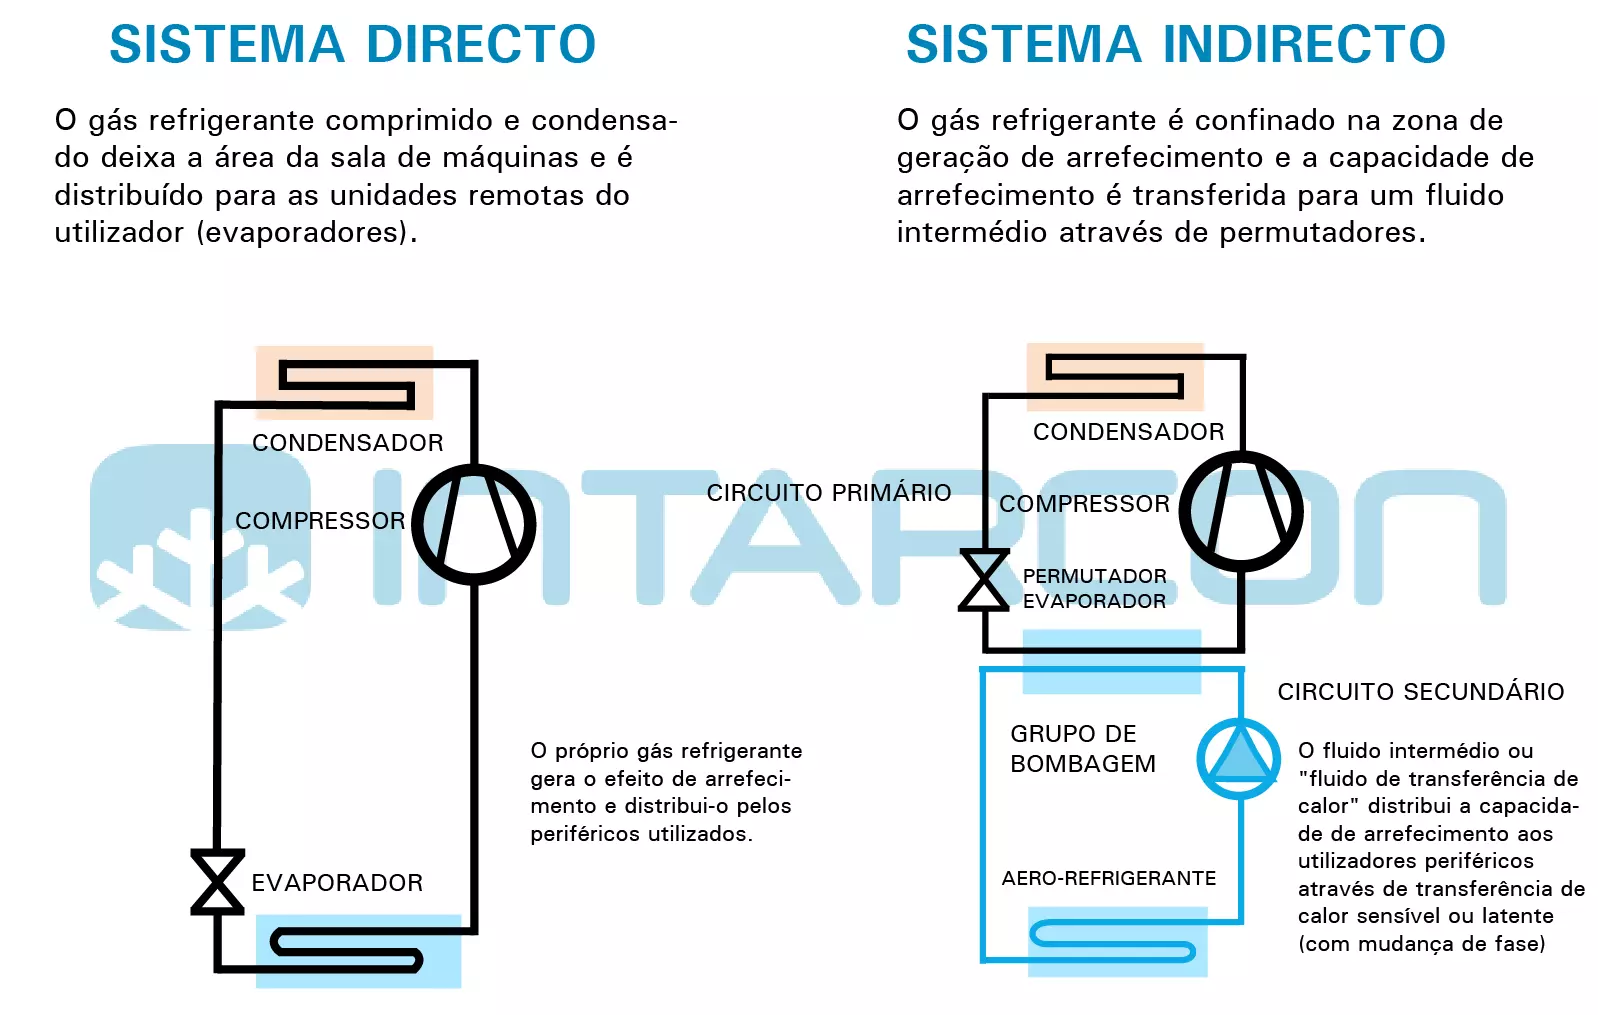 Sistemas directos e indirectos - INTARCON